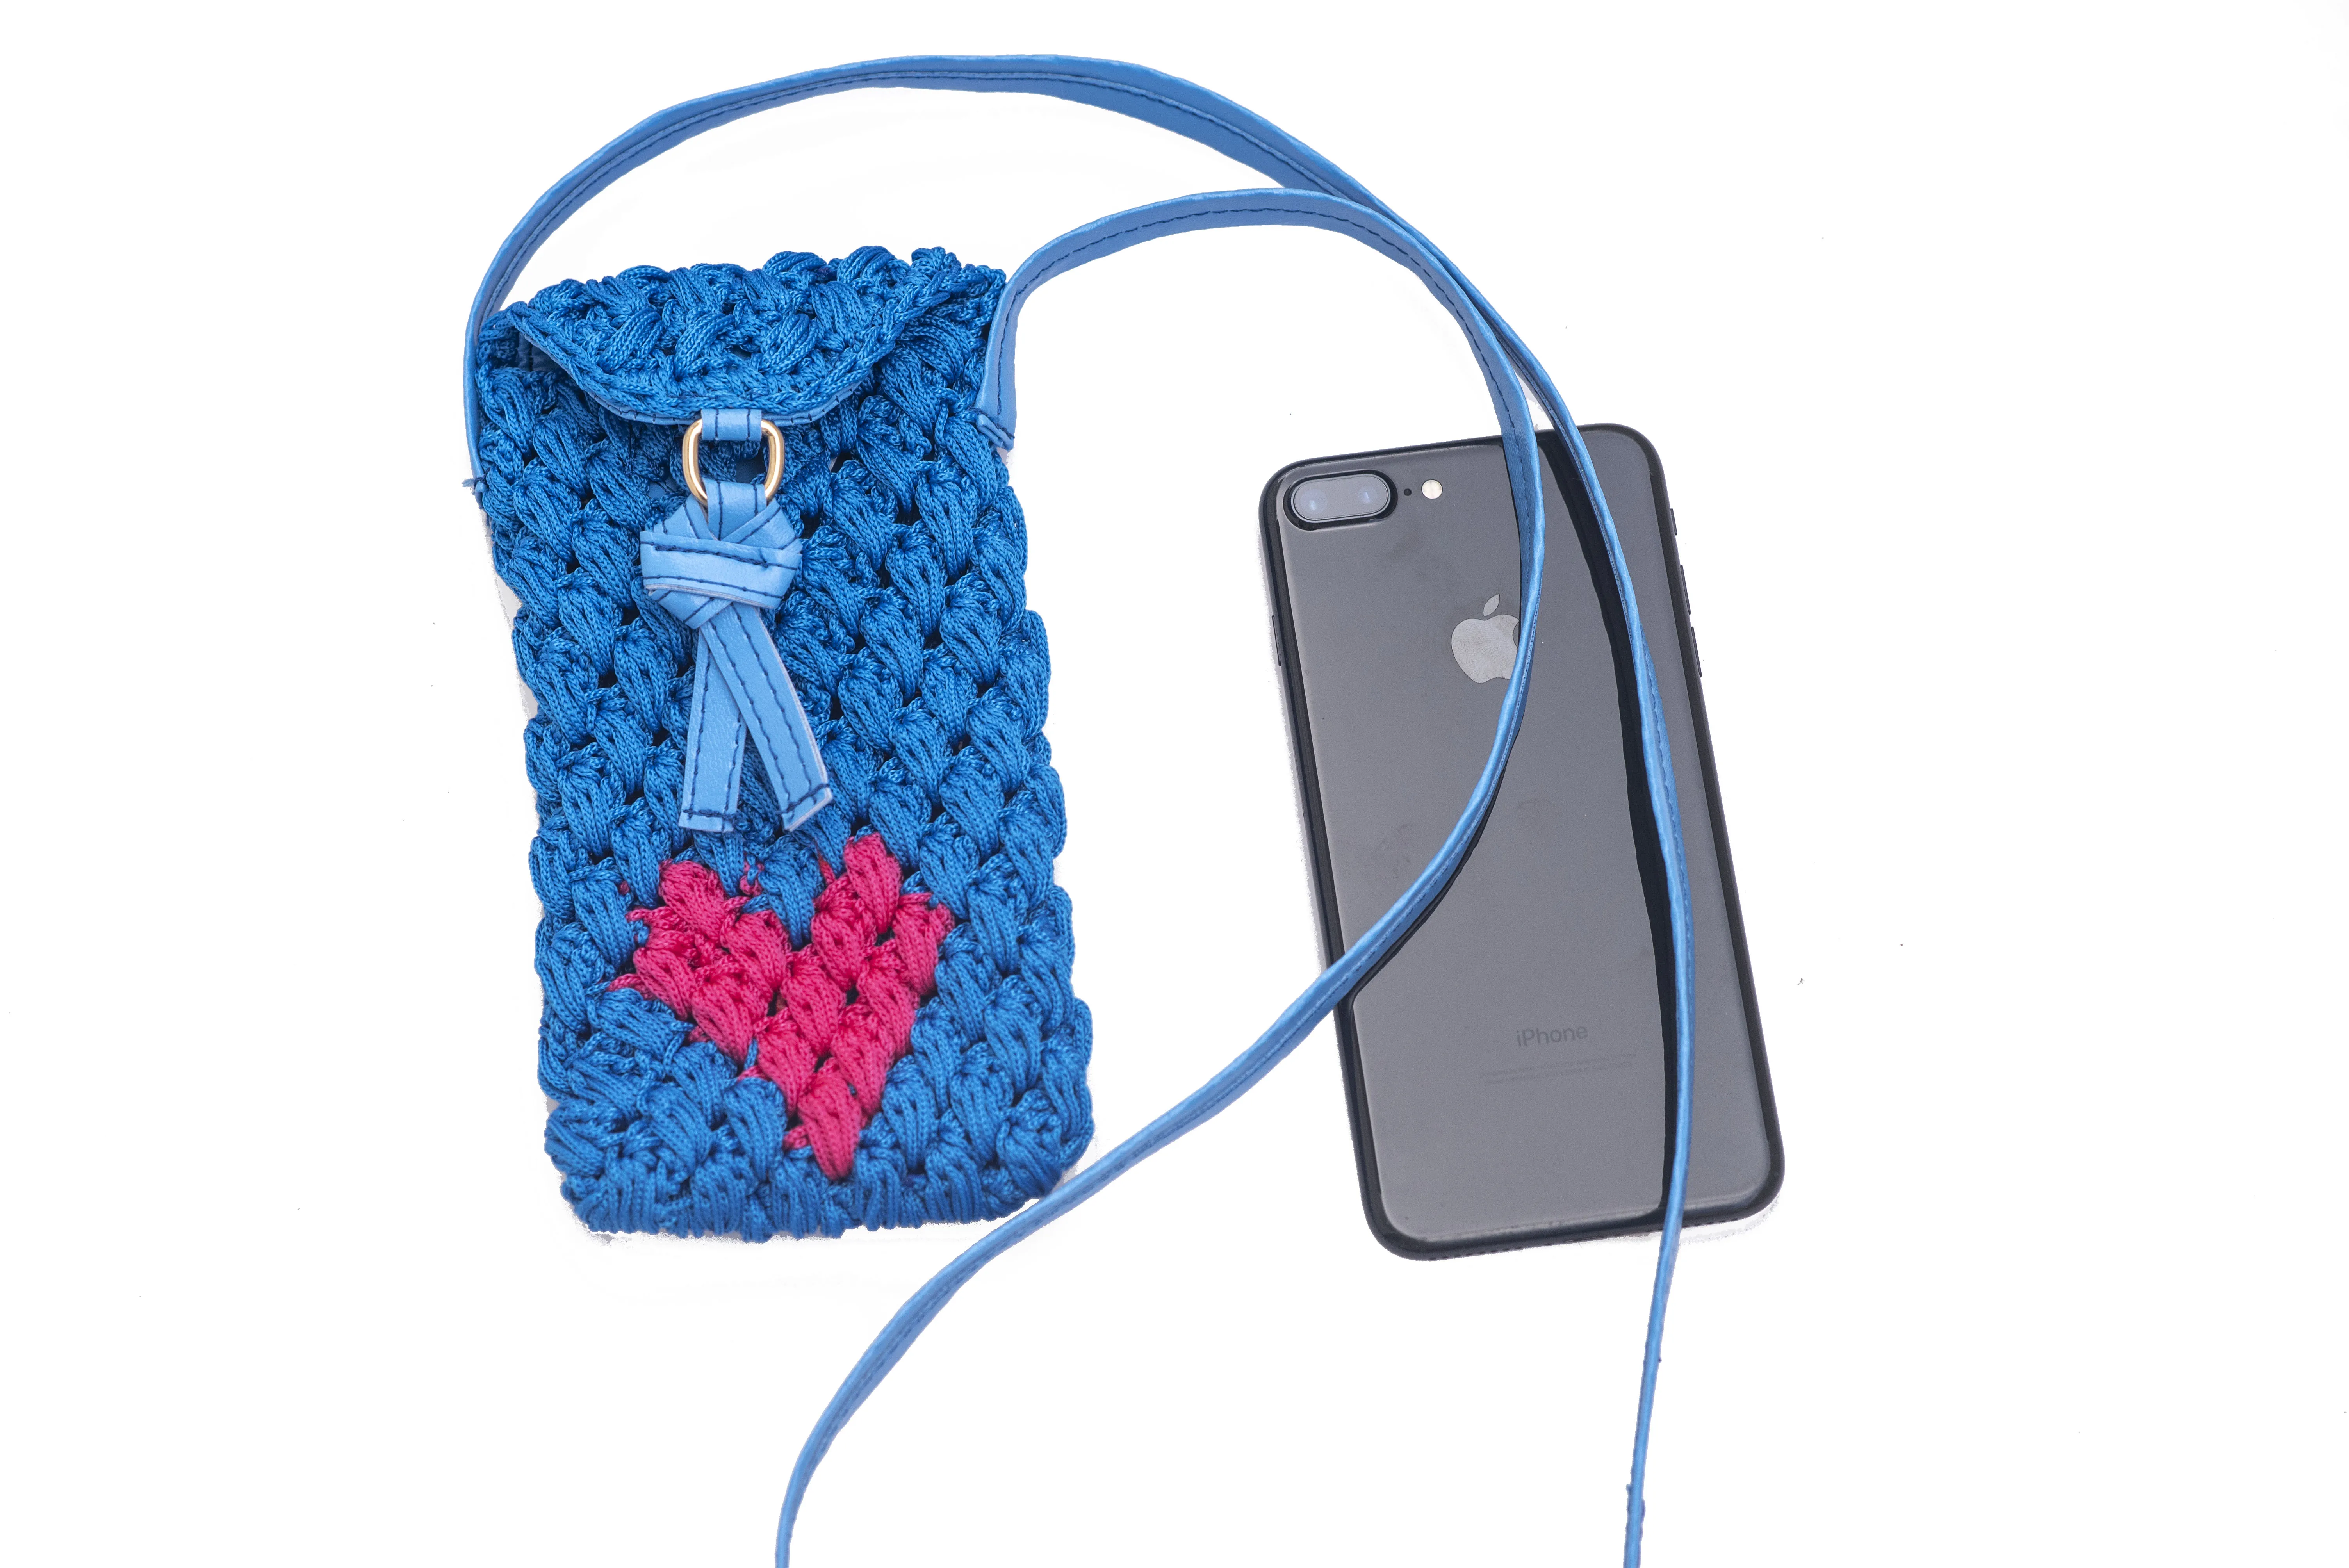 Повседневная стильная женская сумочка Kavshak с рисунком сердца, сумка для сотового телефона, роскошная сумка, дамские сумочки, женские сумки ... от AliExpress RU&CIS NEW